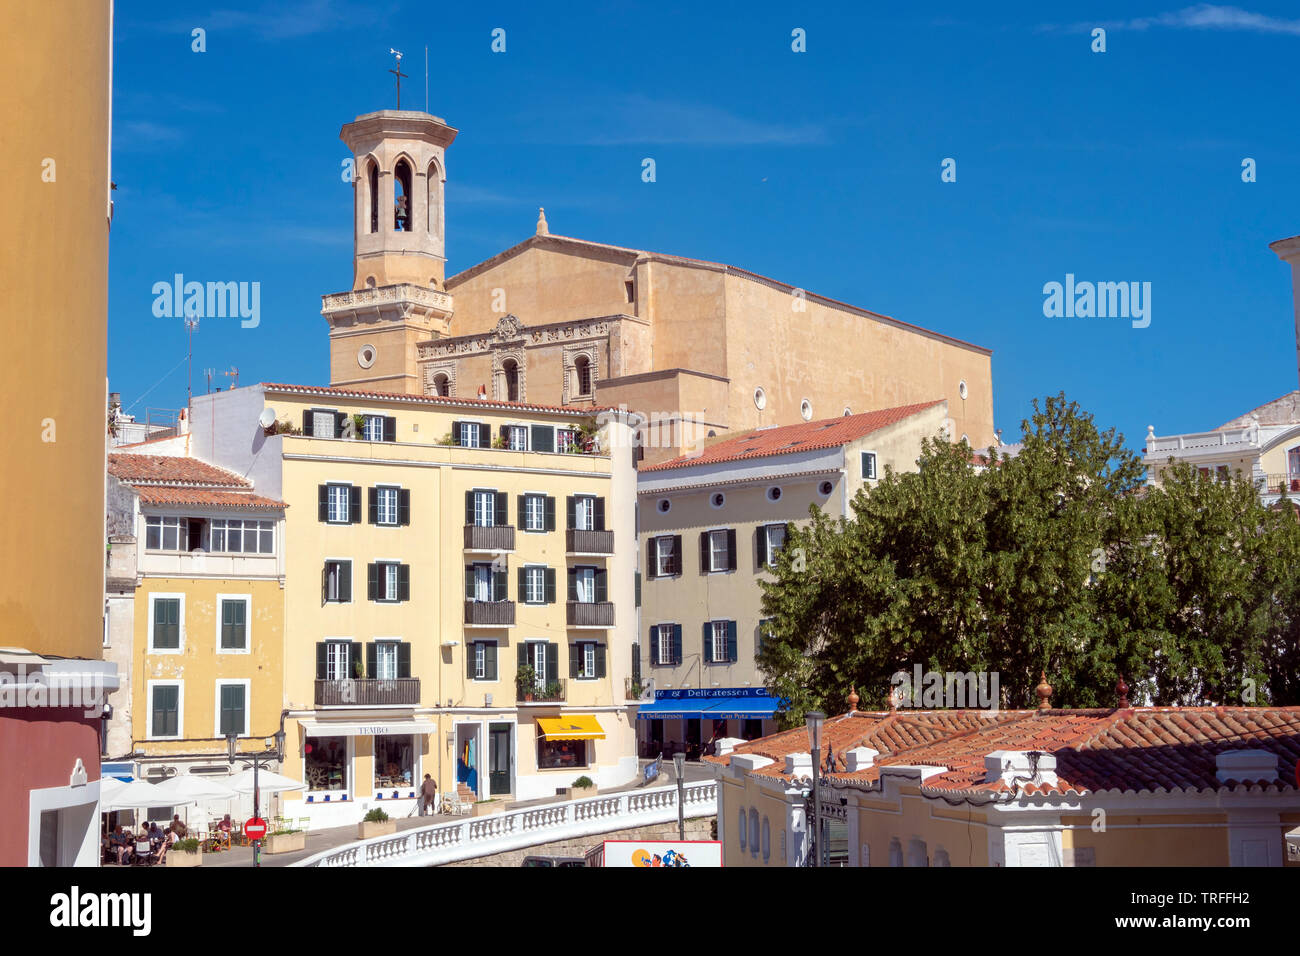 Santa Maria de Maó, Mahon, Capital of Menorca, Balearic Islands, Spain Stock Photo